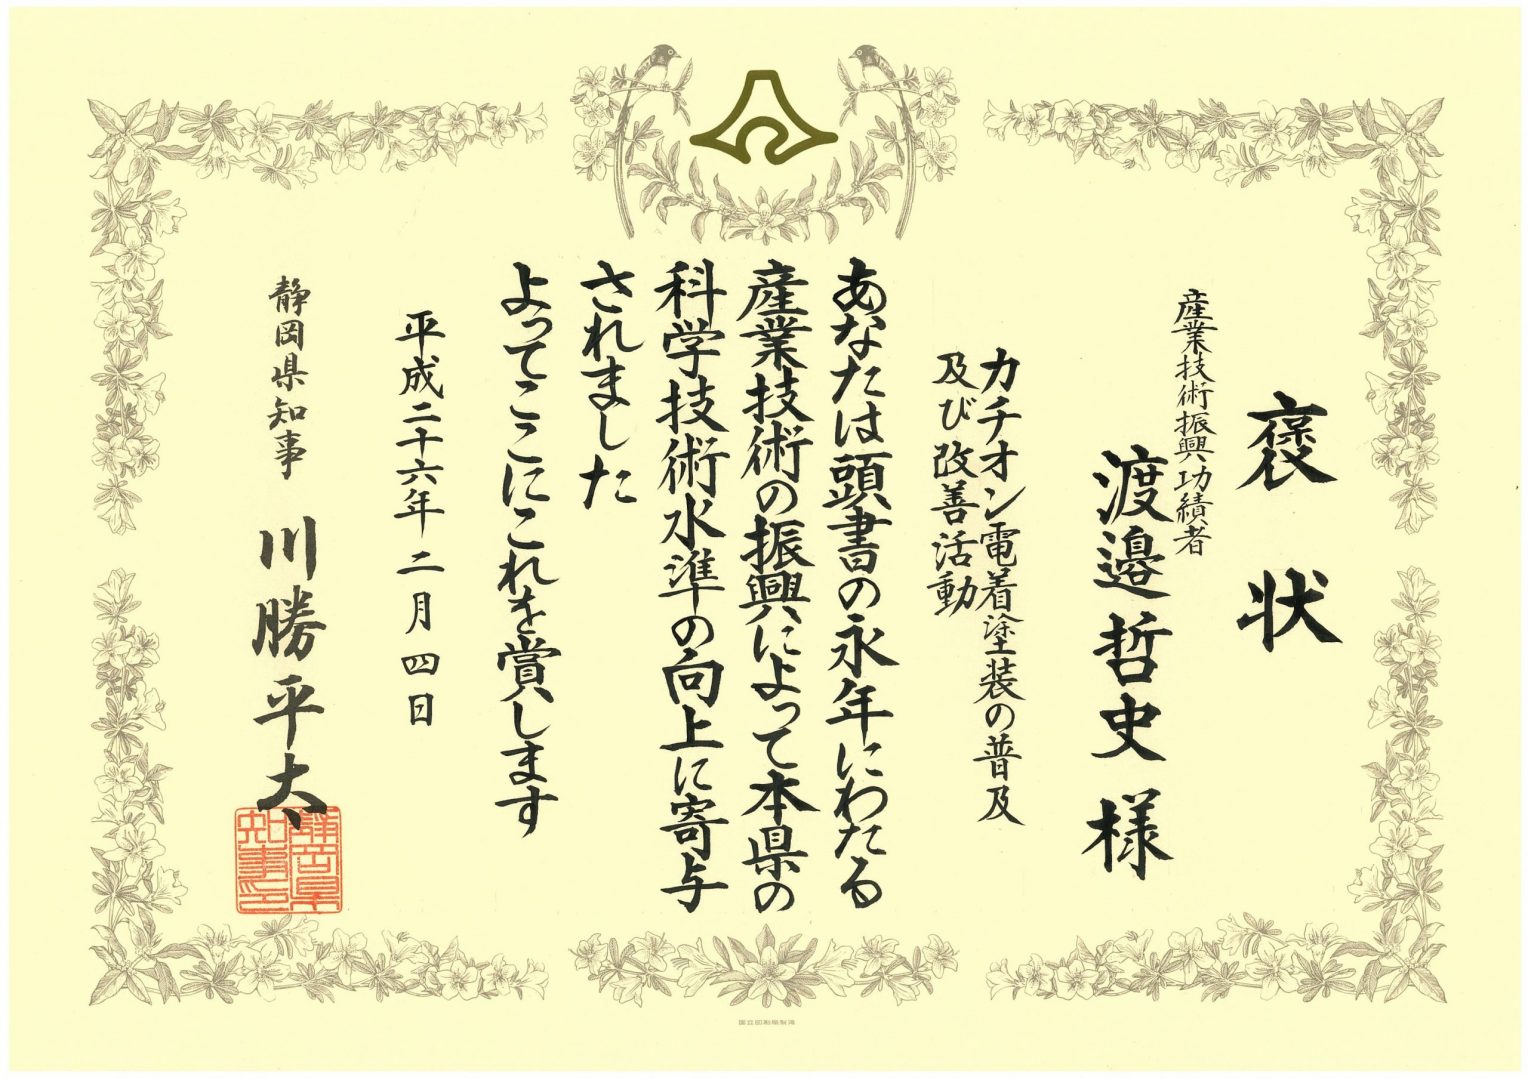 産業技術振興功績者として県静岡県知事より表彰されました。